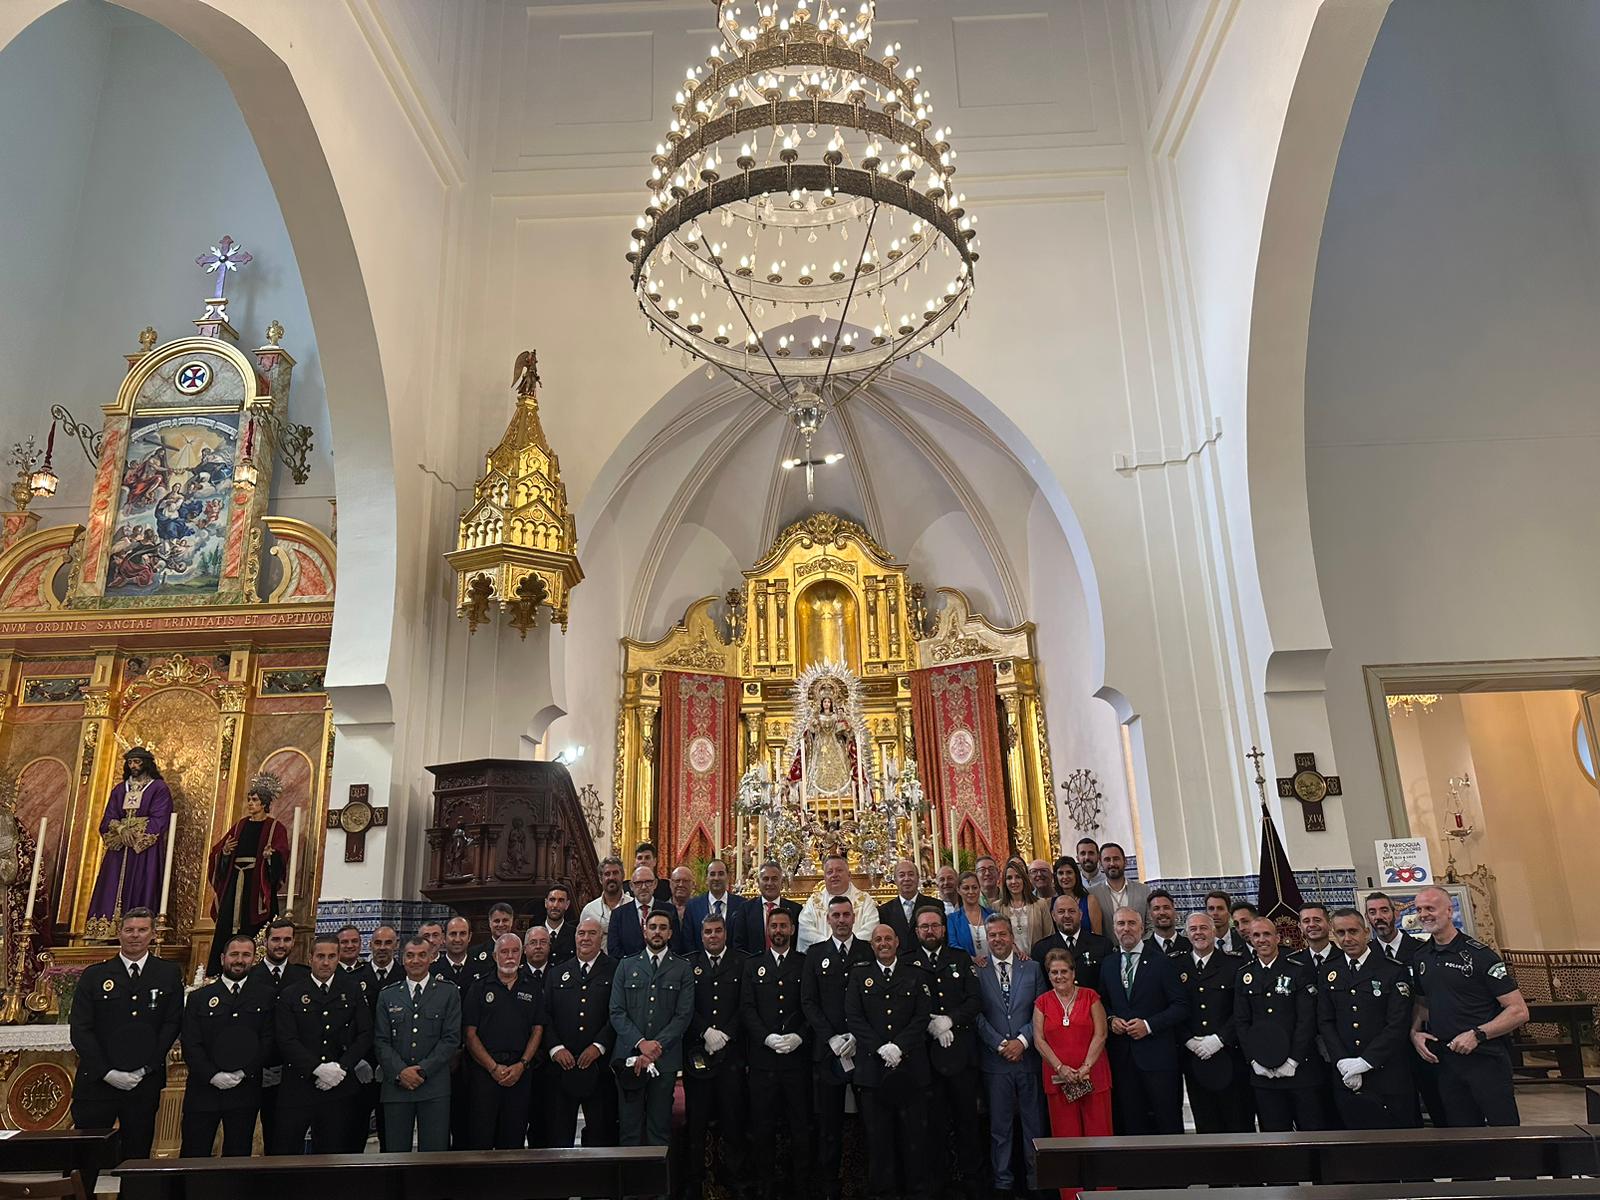 La Policía Local de Isla Cristina celebra la festividad de sus patronos los Santos Ángeles Custodios